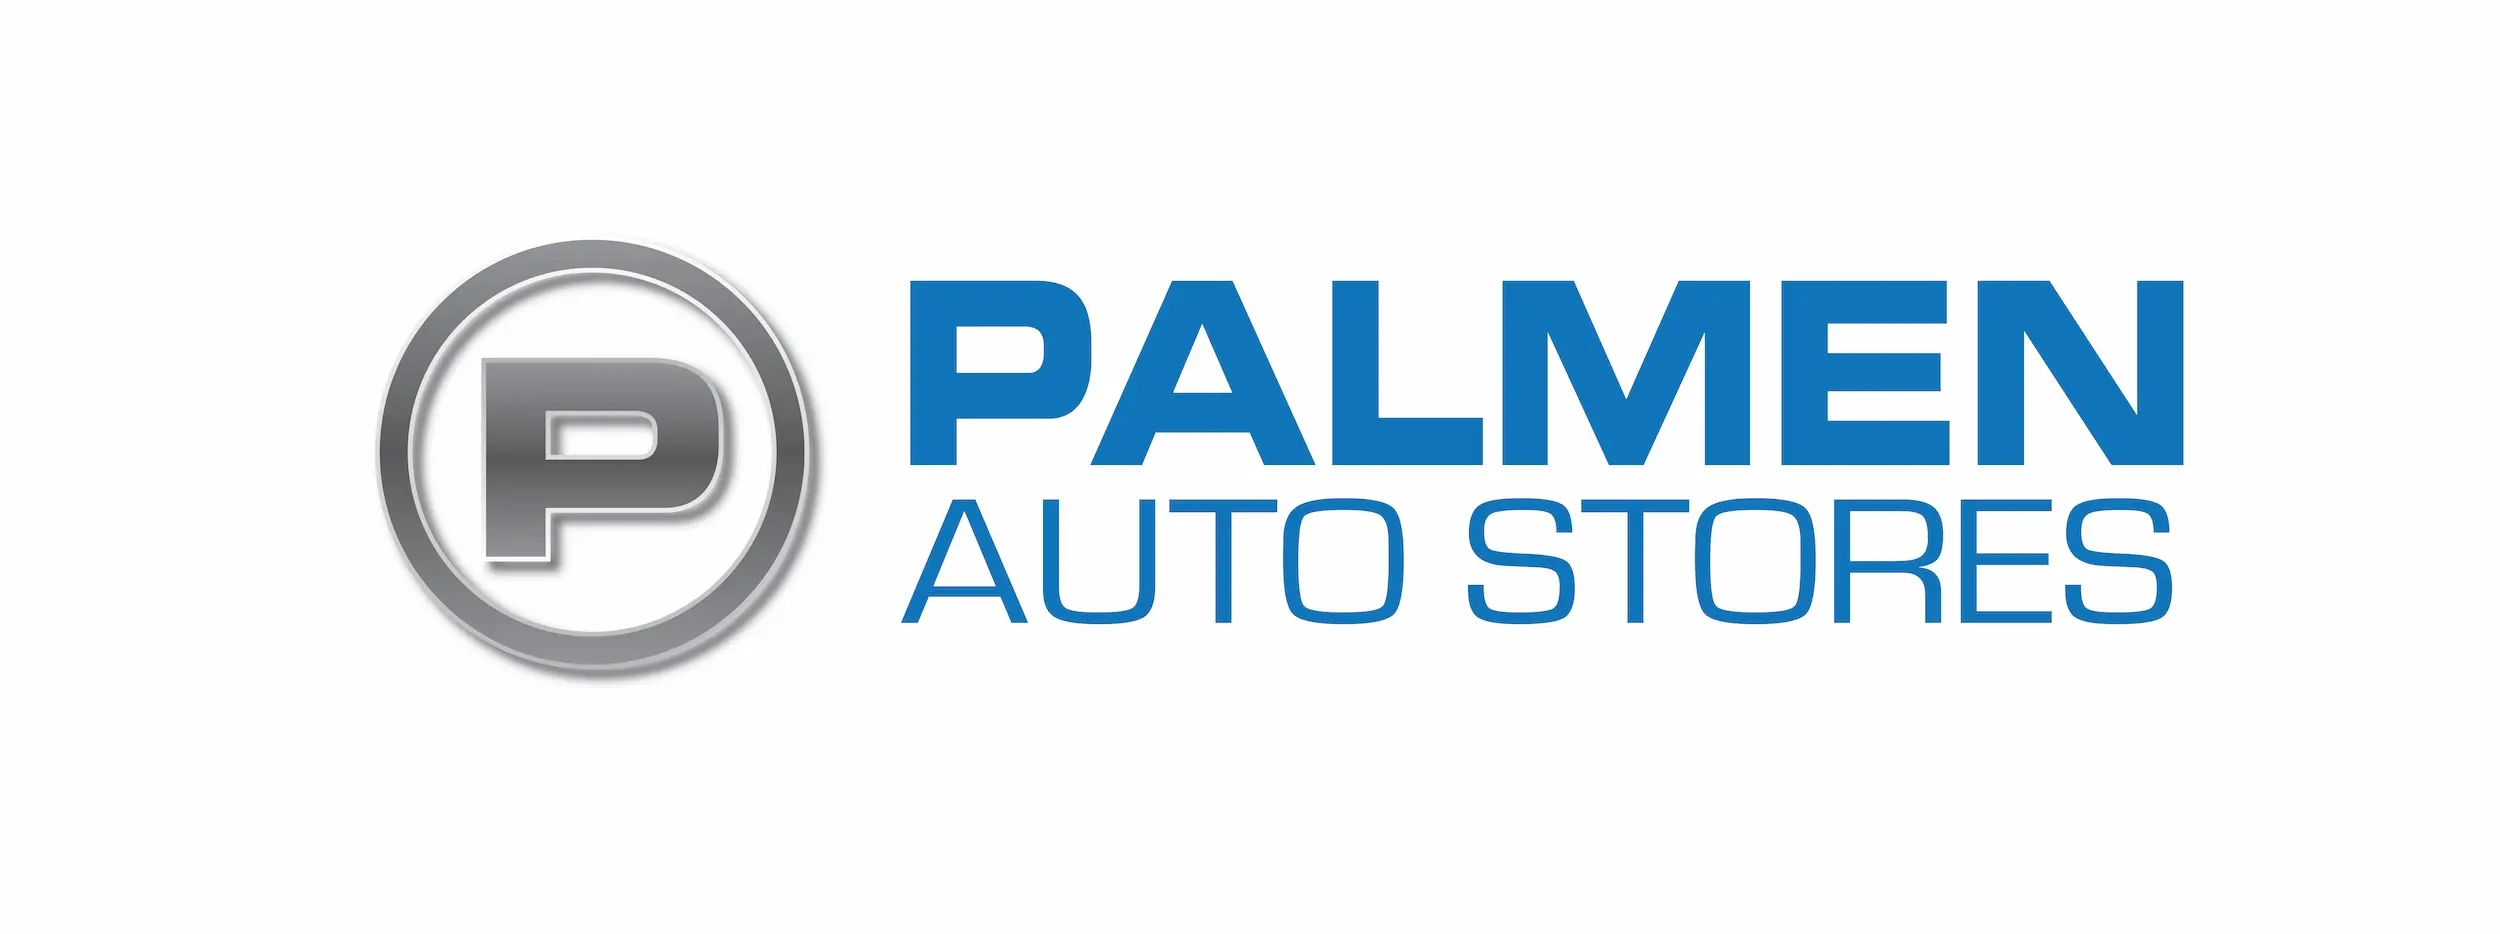 Palmen Auto Stores Blue.